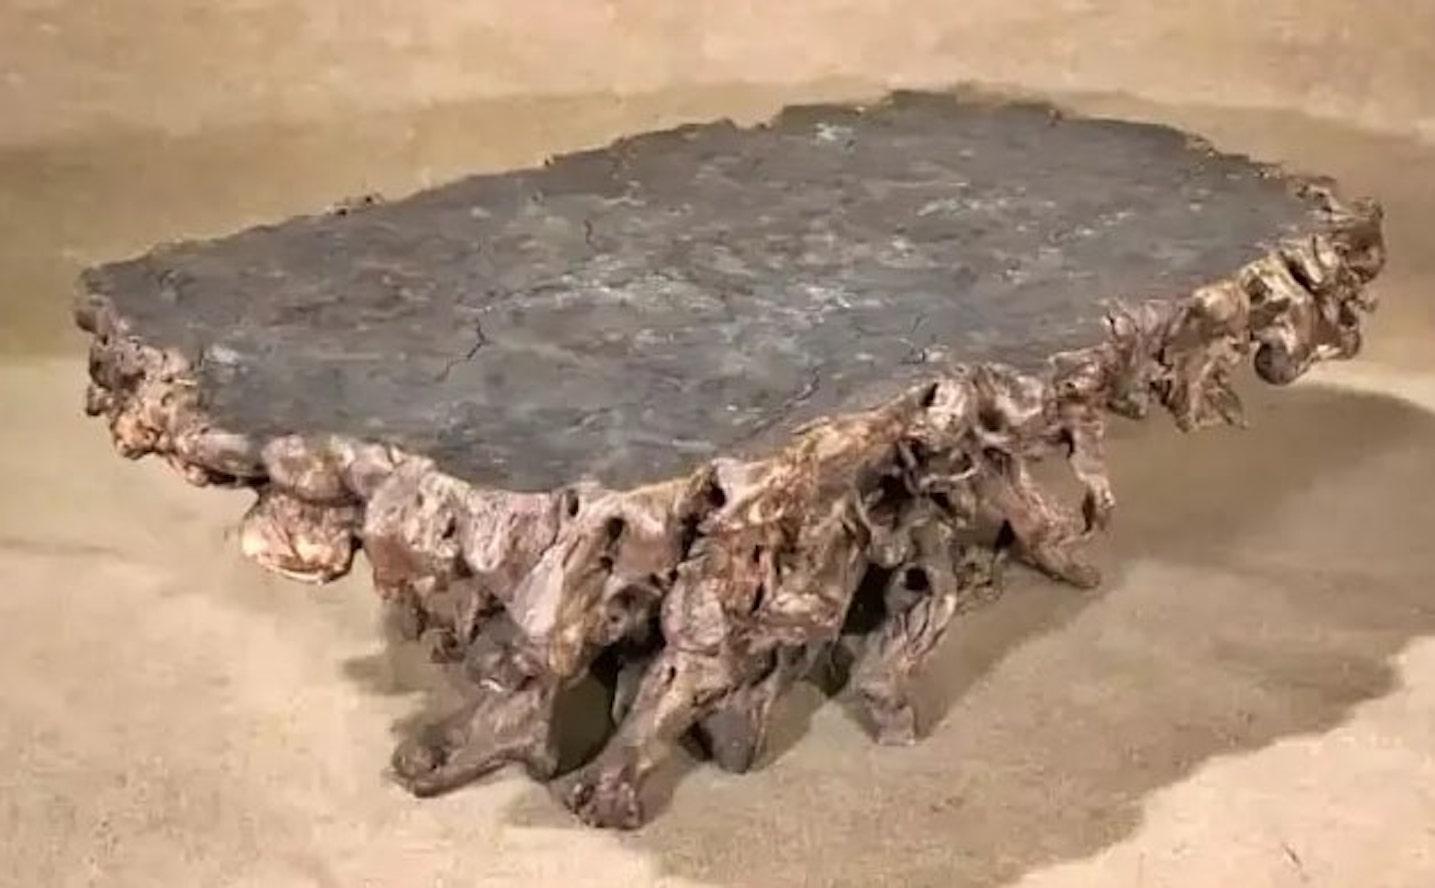 Grande table basse en bois de teck. D'une longueur de plus de cinq pieds, cette table lourde peut être utilisée à l'intérieur ou dans votre jardin.
Veuillez confirmer le lieu NY ou NJ